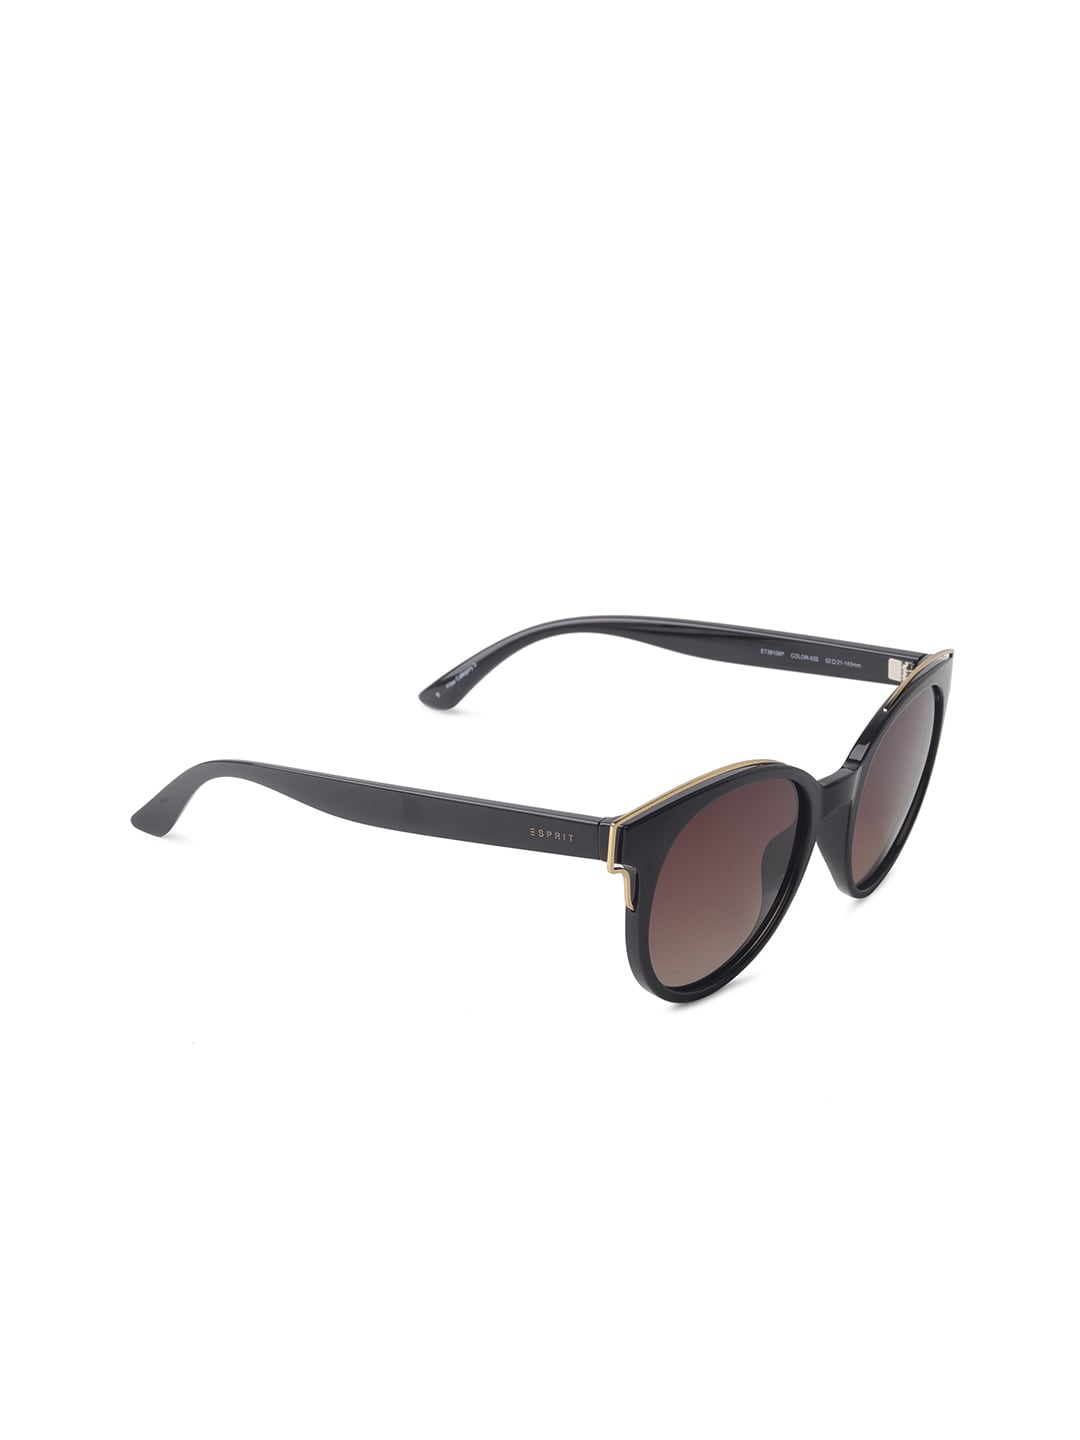 ESPRIT Women Brown Lens & Black Round Sunglasses with Polarised Lens ET39106P-52-535 Price in India